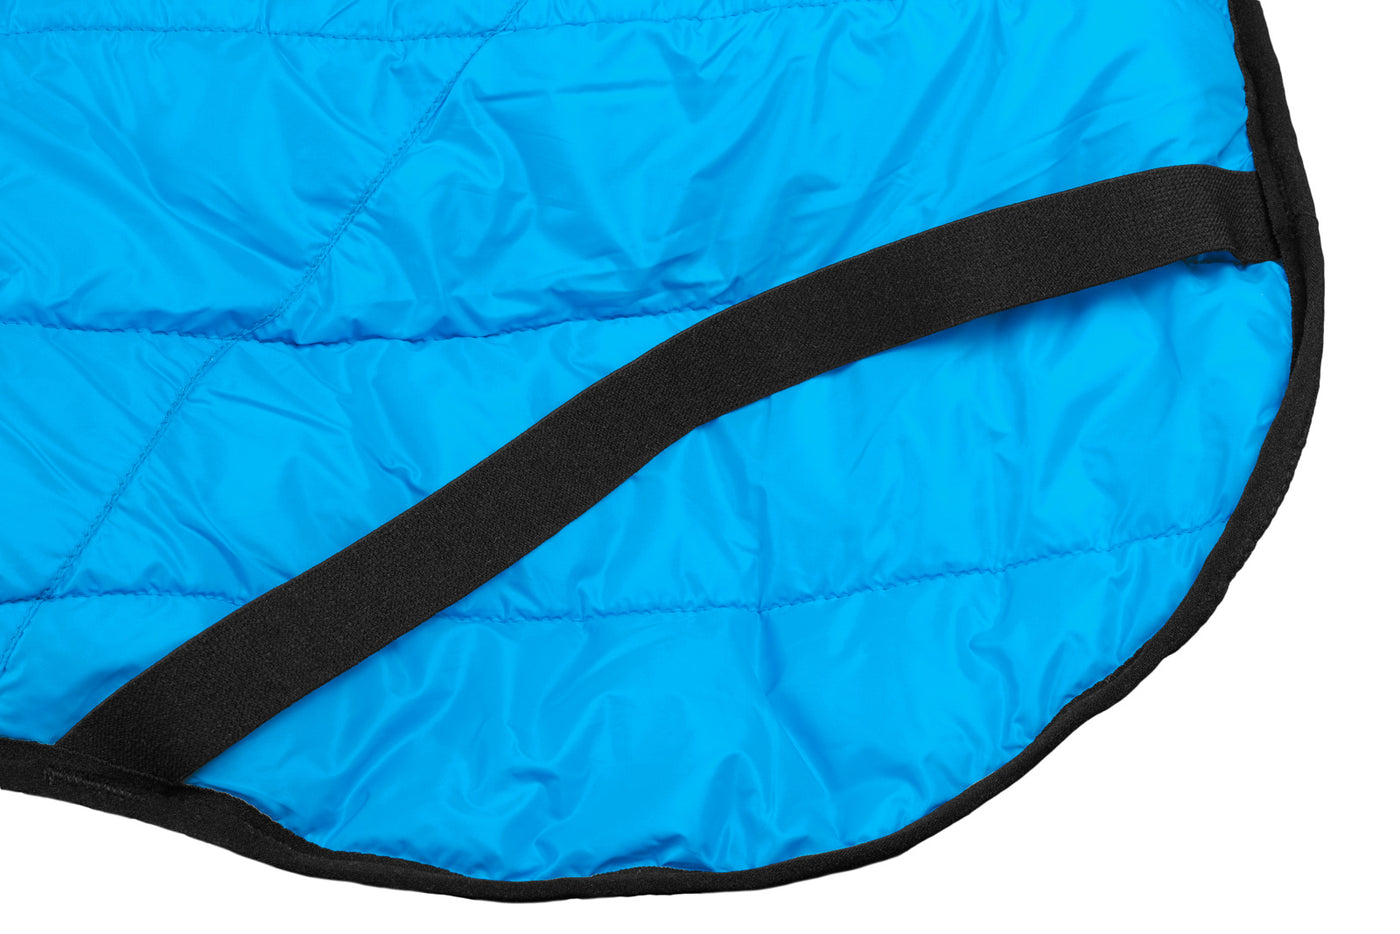 Glacier jacket 2.0 Non-stop dogwear cintas para las patas